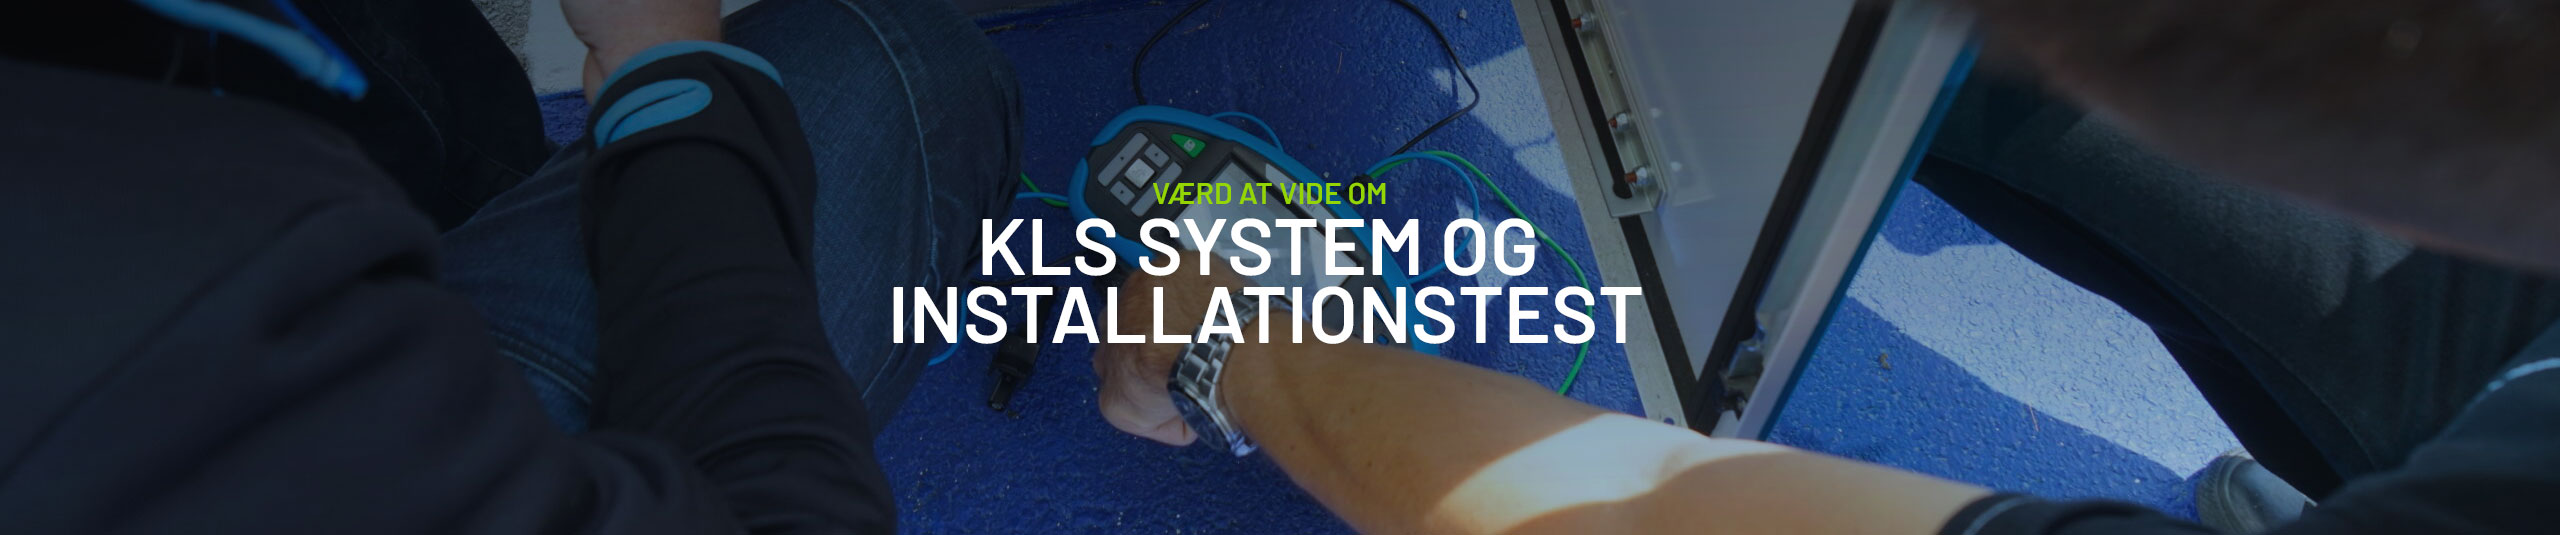 Vær at vide - KLS-systemet og Installationstest